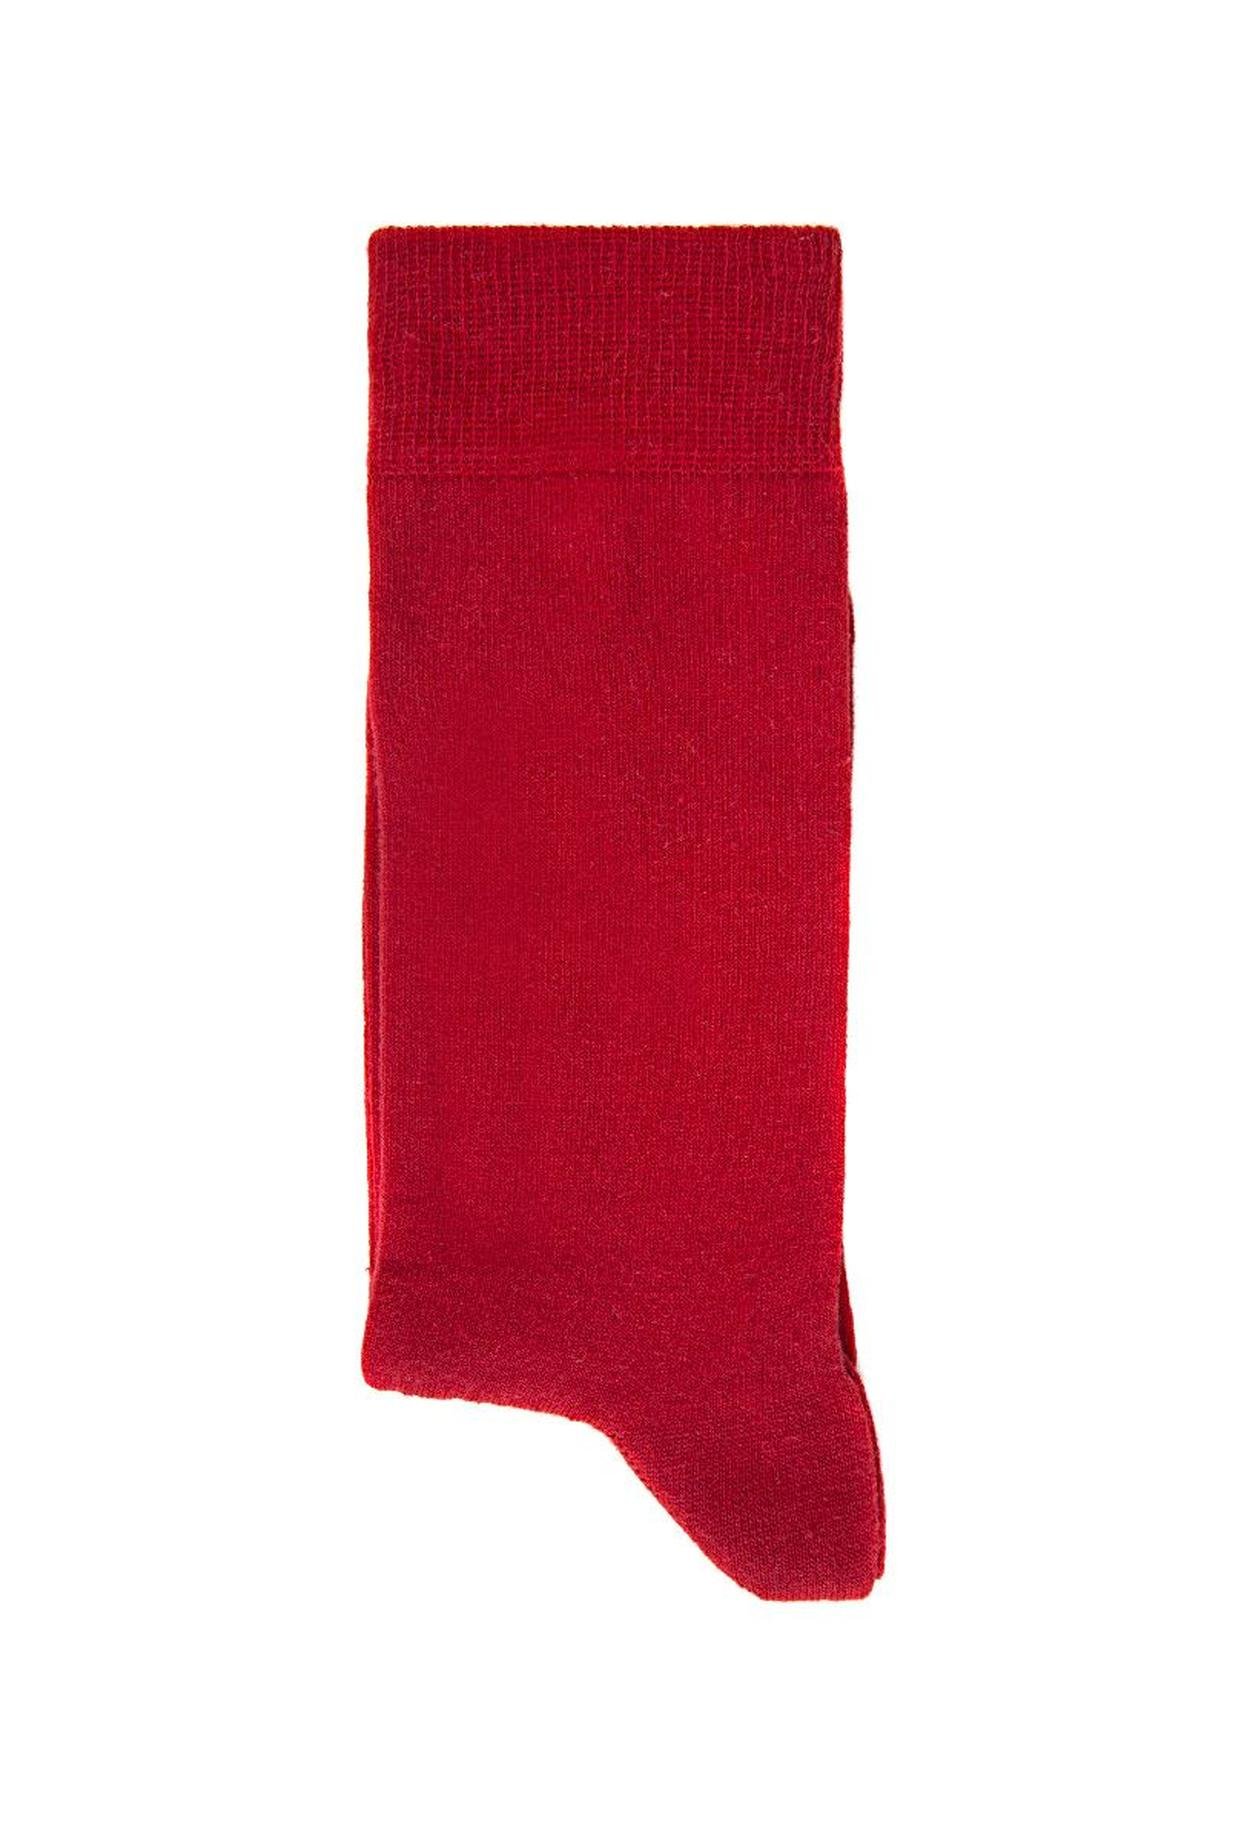 Twn Kırmızı Çorap